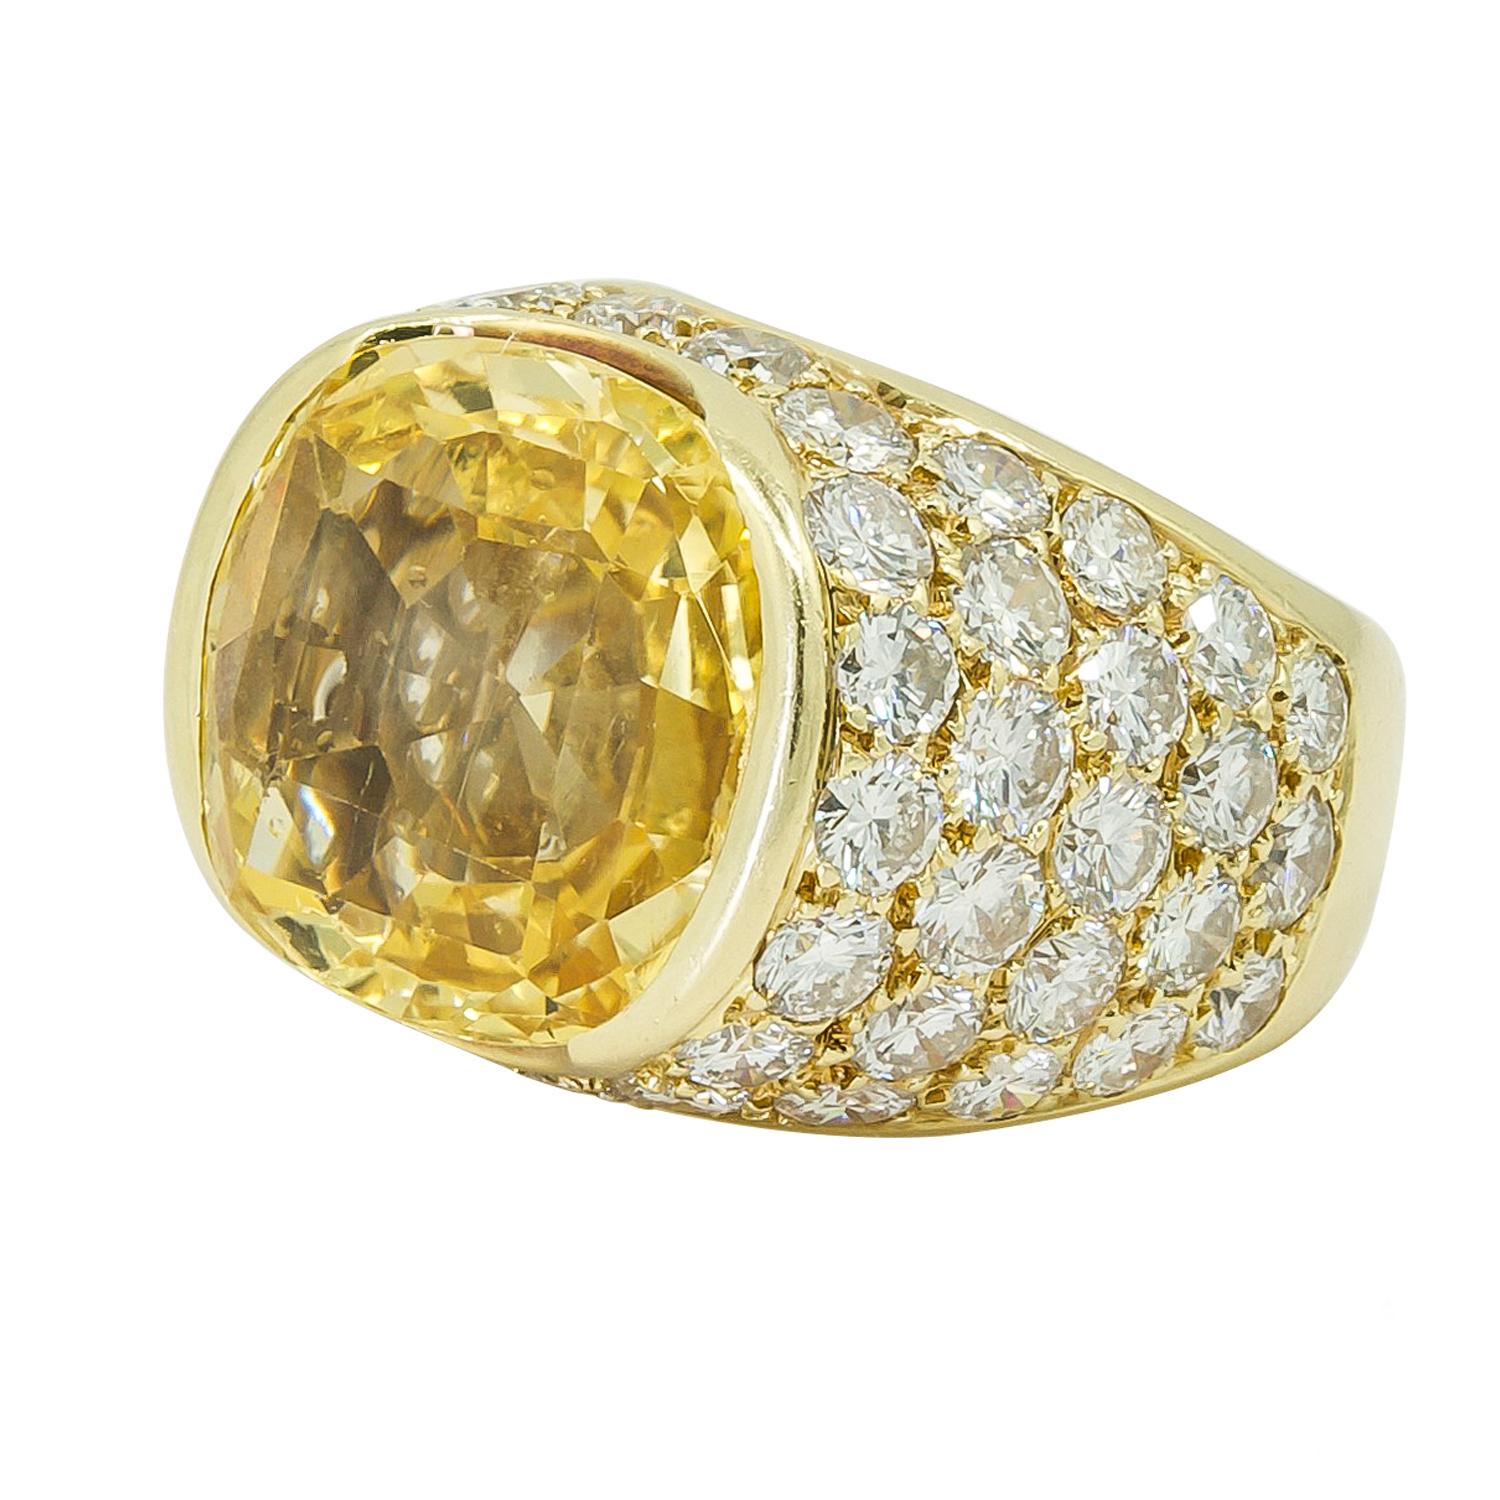 VAN CLEEF & ARPELS Ring mit Diamant und gelbem Saphir
Ring aus 18 Karat Gelbgold, besetzt mit Diamanten und einem gelben Ceylon-Saphir ohne Hitze, signiert Van Cleef & Arpels, um 1980.
Gelber Saphir ca. 18 Karat. Dies kommt mit AGL-Zertifikat
54